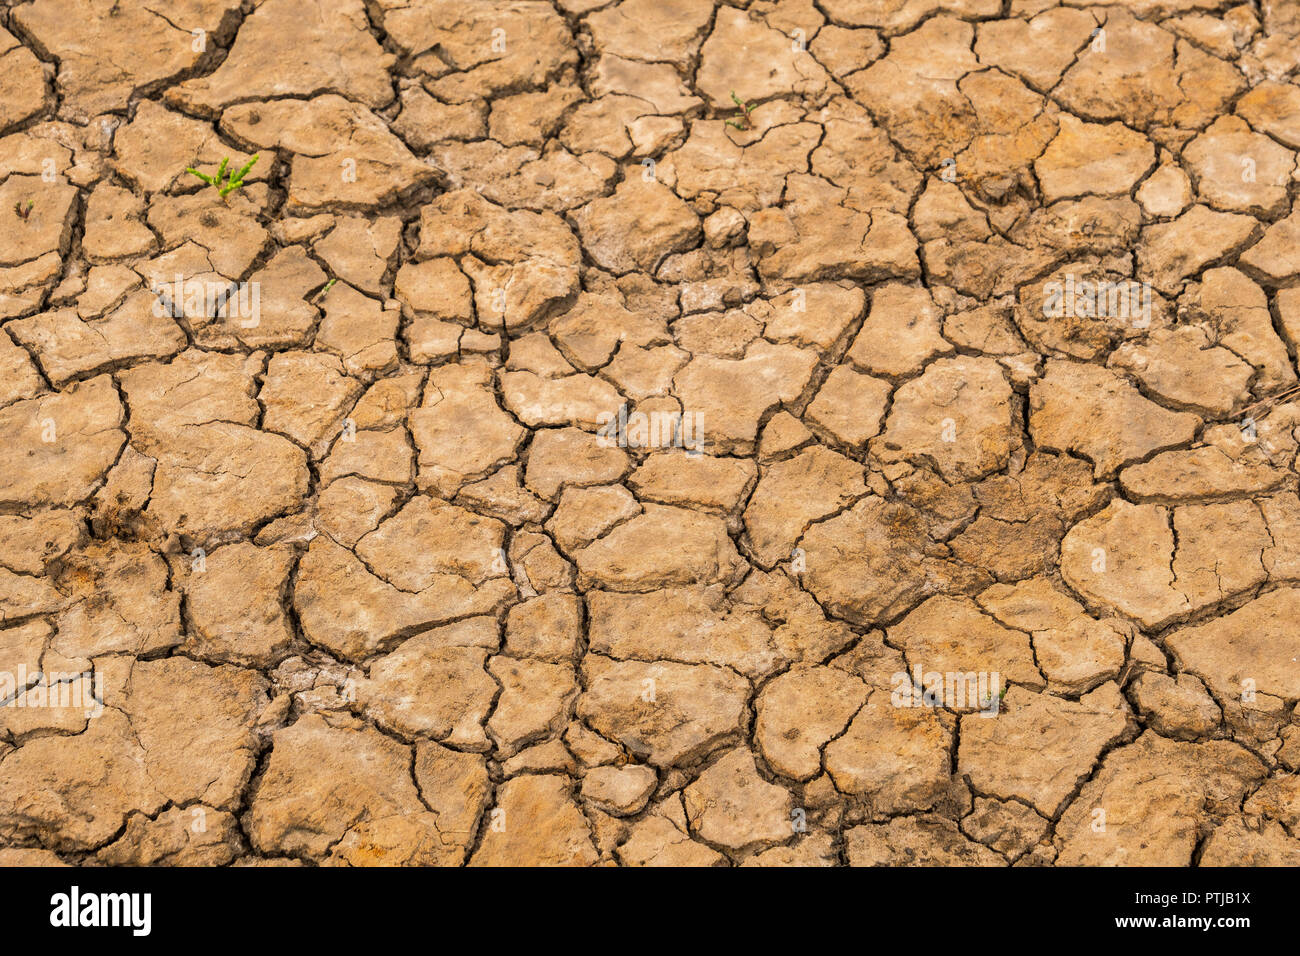 Il fango incrinato nella lunga estate secca. Foto Stock